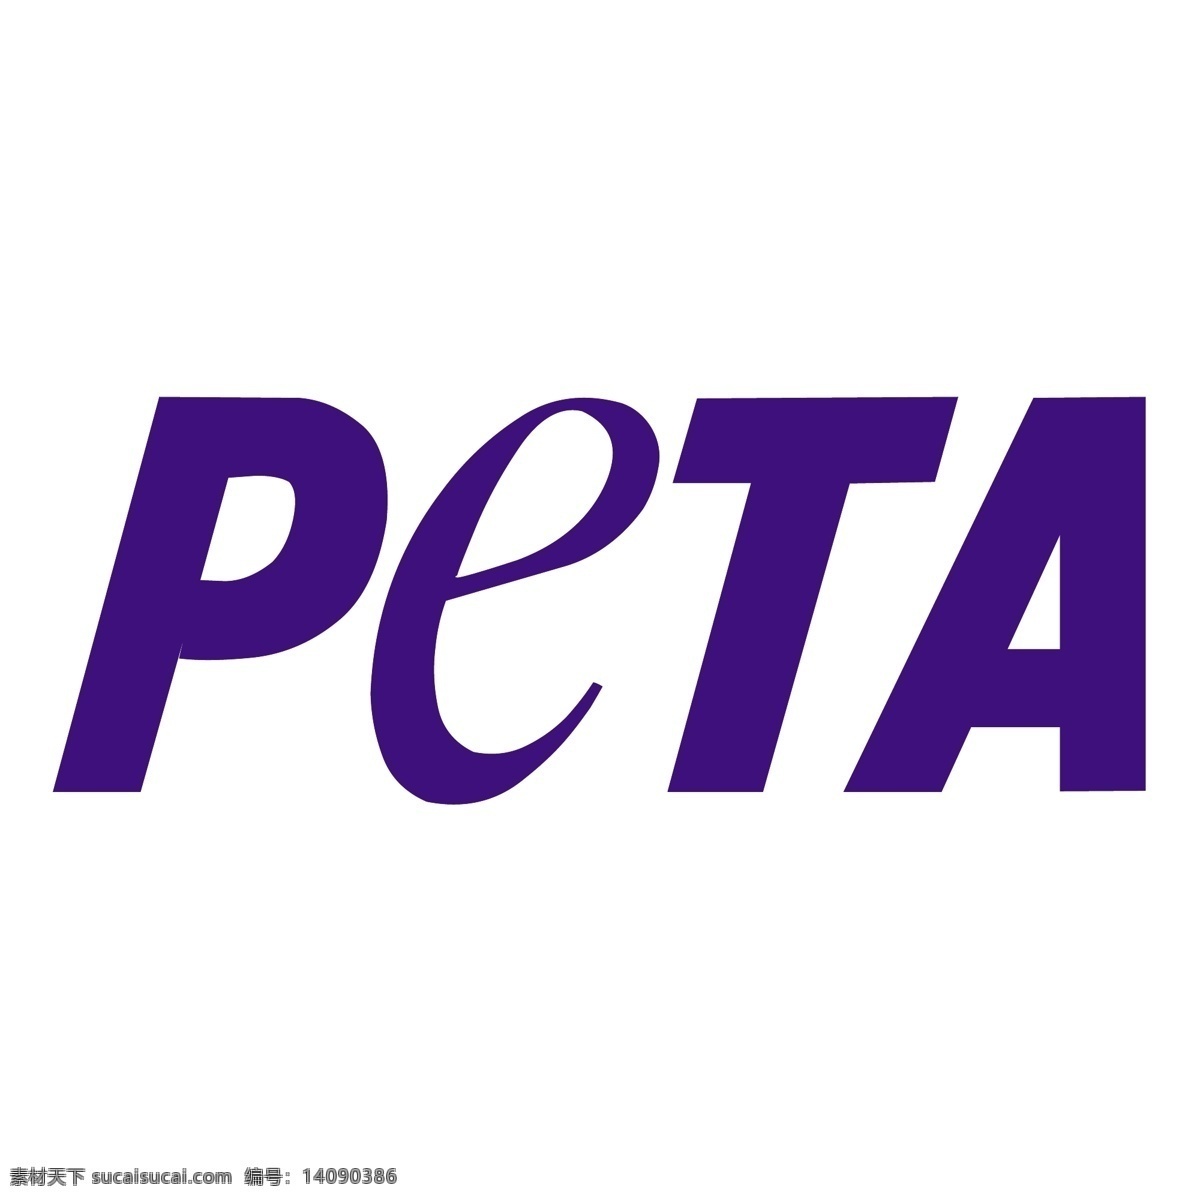 peta 善待 动物 组织 标志 标识为免费 白色